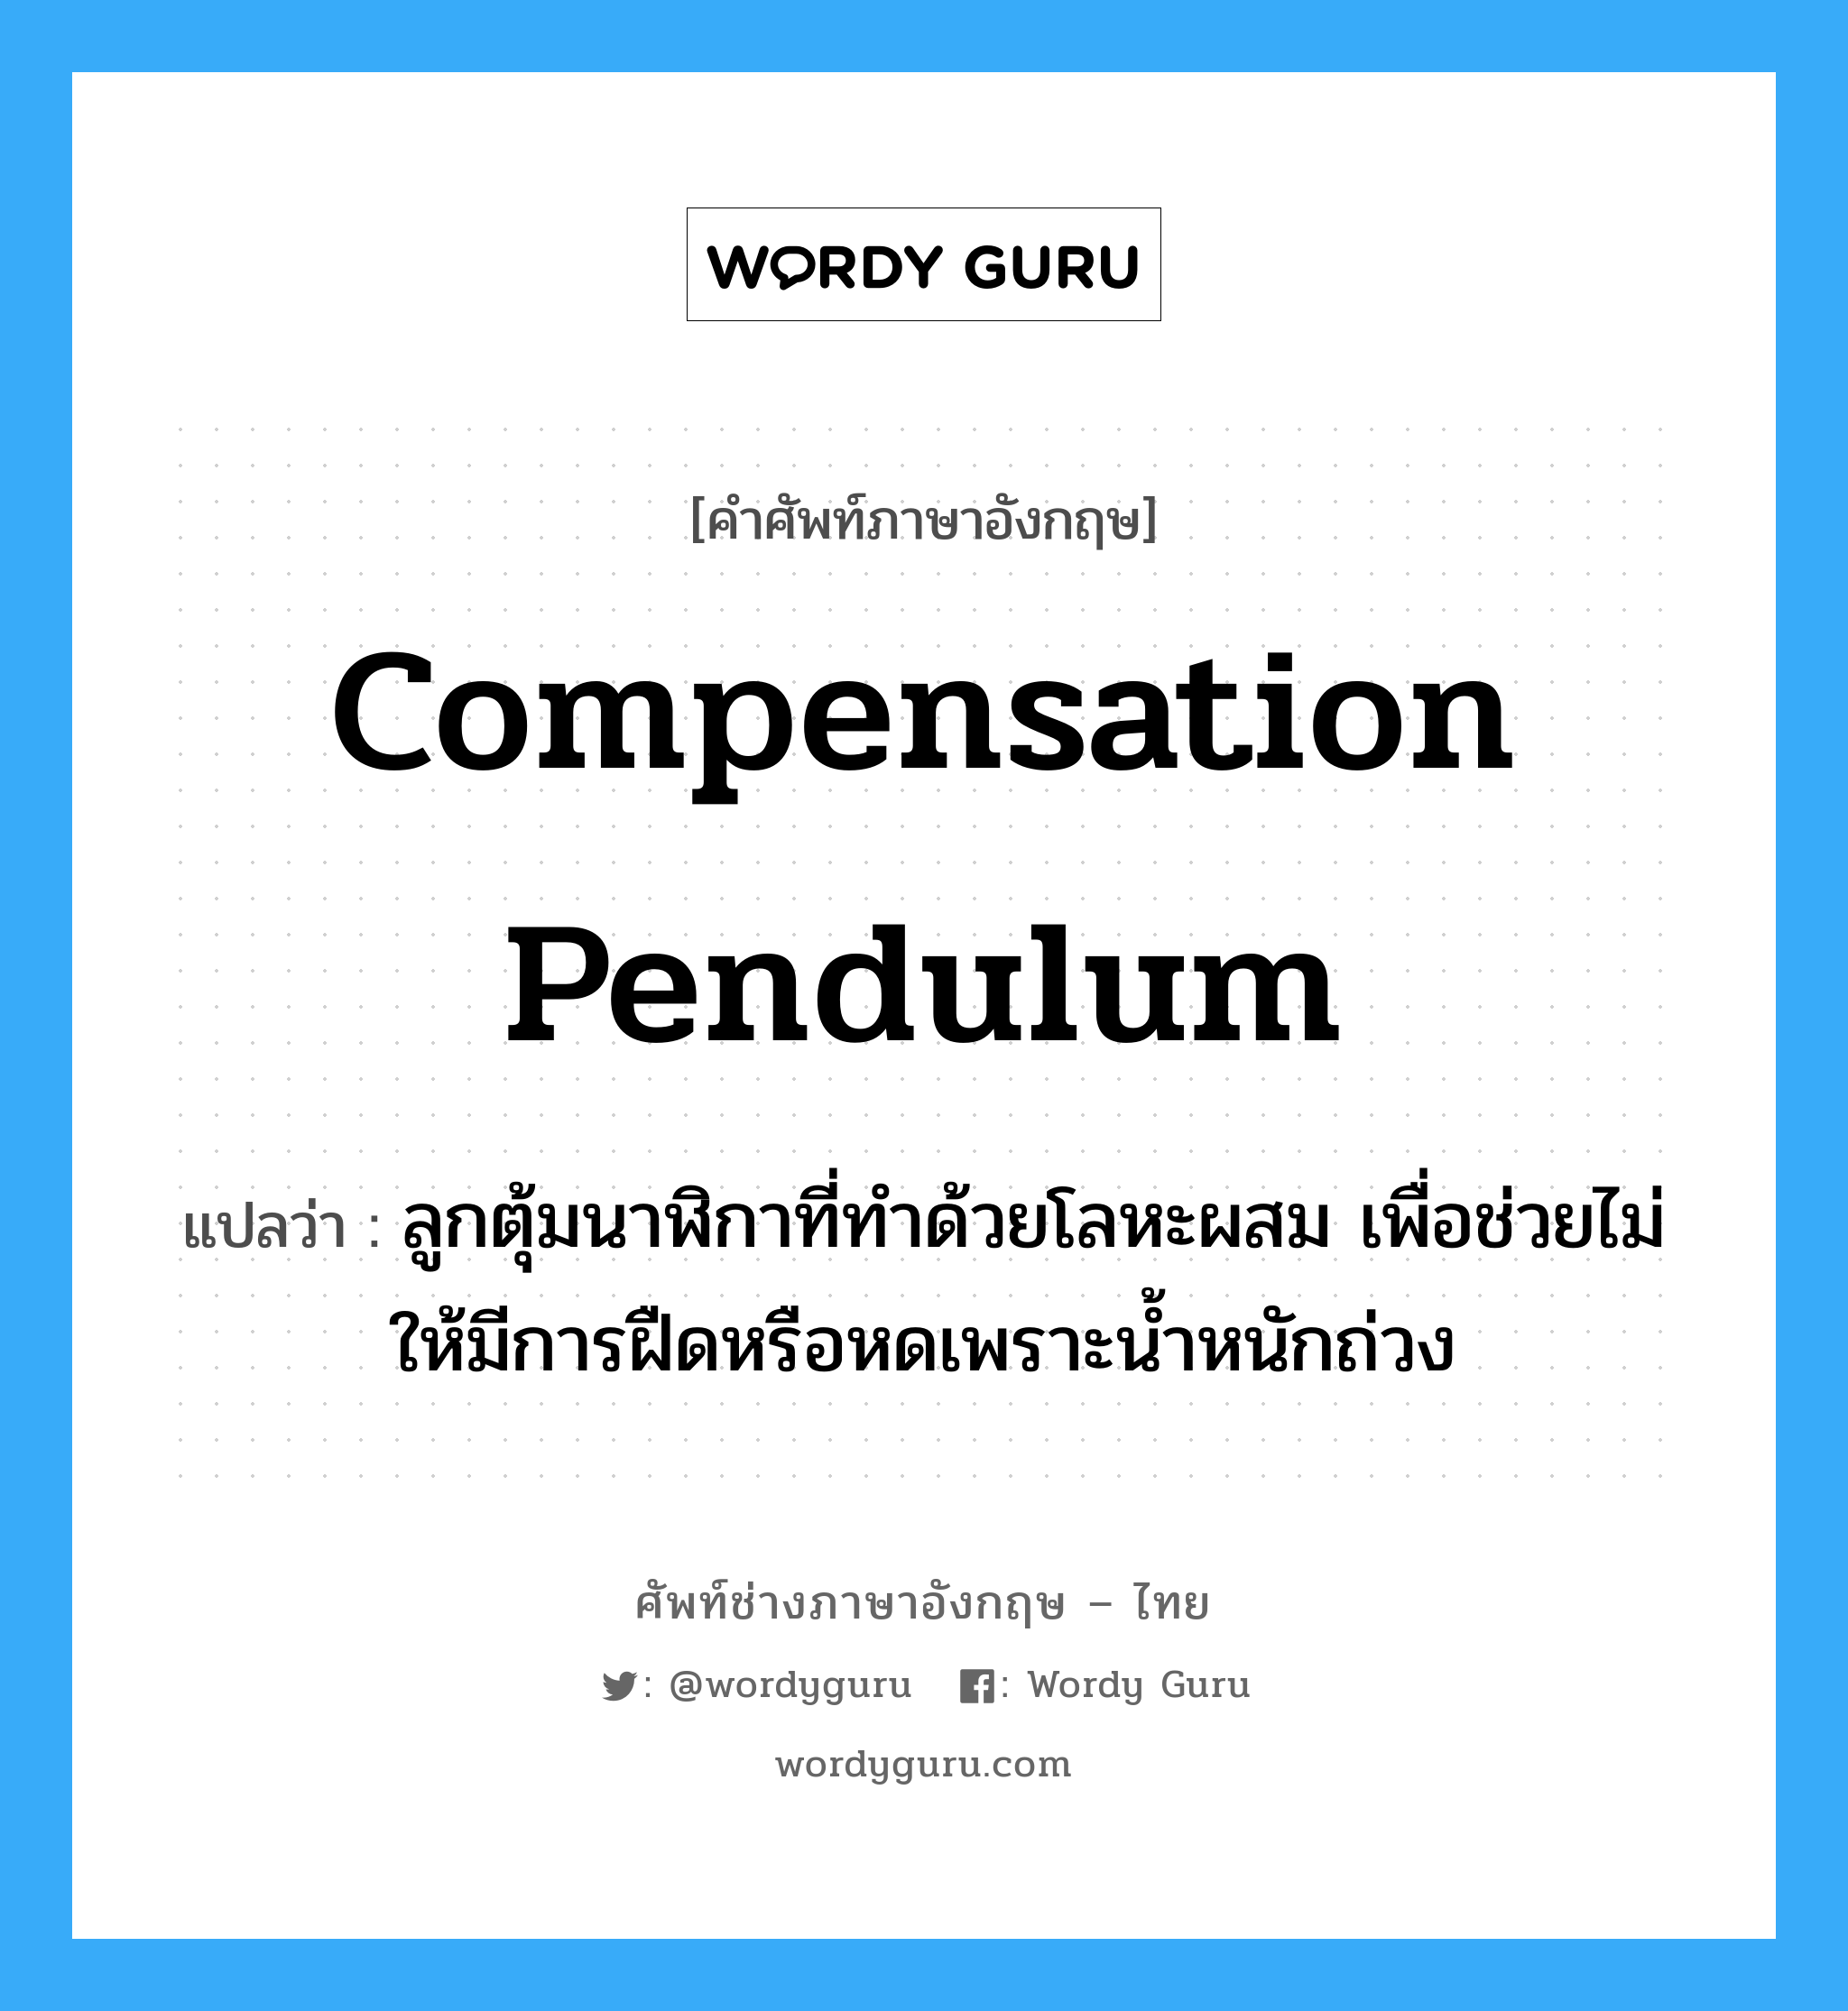 compensation pendulum แปลว่า?, คำศัพท์ช่างภาษาอังกฤษ - ไทย compensation pendulum คำศัพท์ภาษาอังกฤษ compensation pendulum แปลว่า ลูกตุ้มนาฬิกาที่ทำด้วยโลหะผสม เพื่อช่วยไม่ให้มีการฝืดหรือหดเพราะน้ำหนักถ่วง